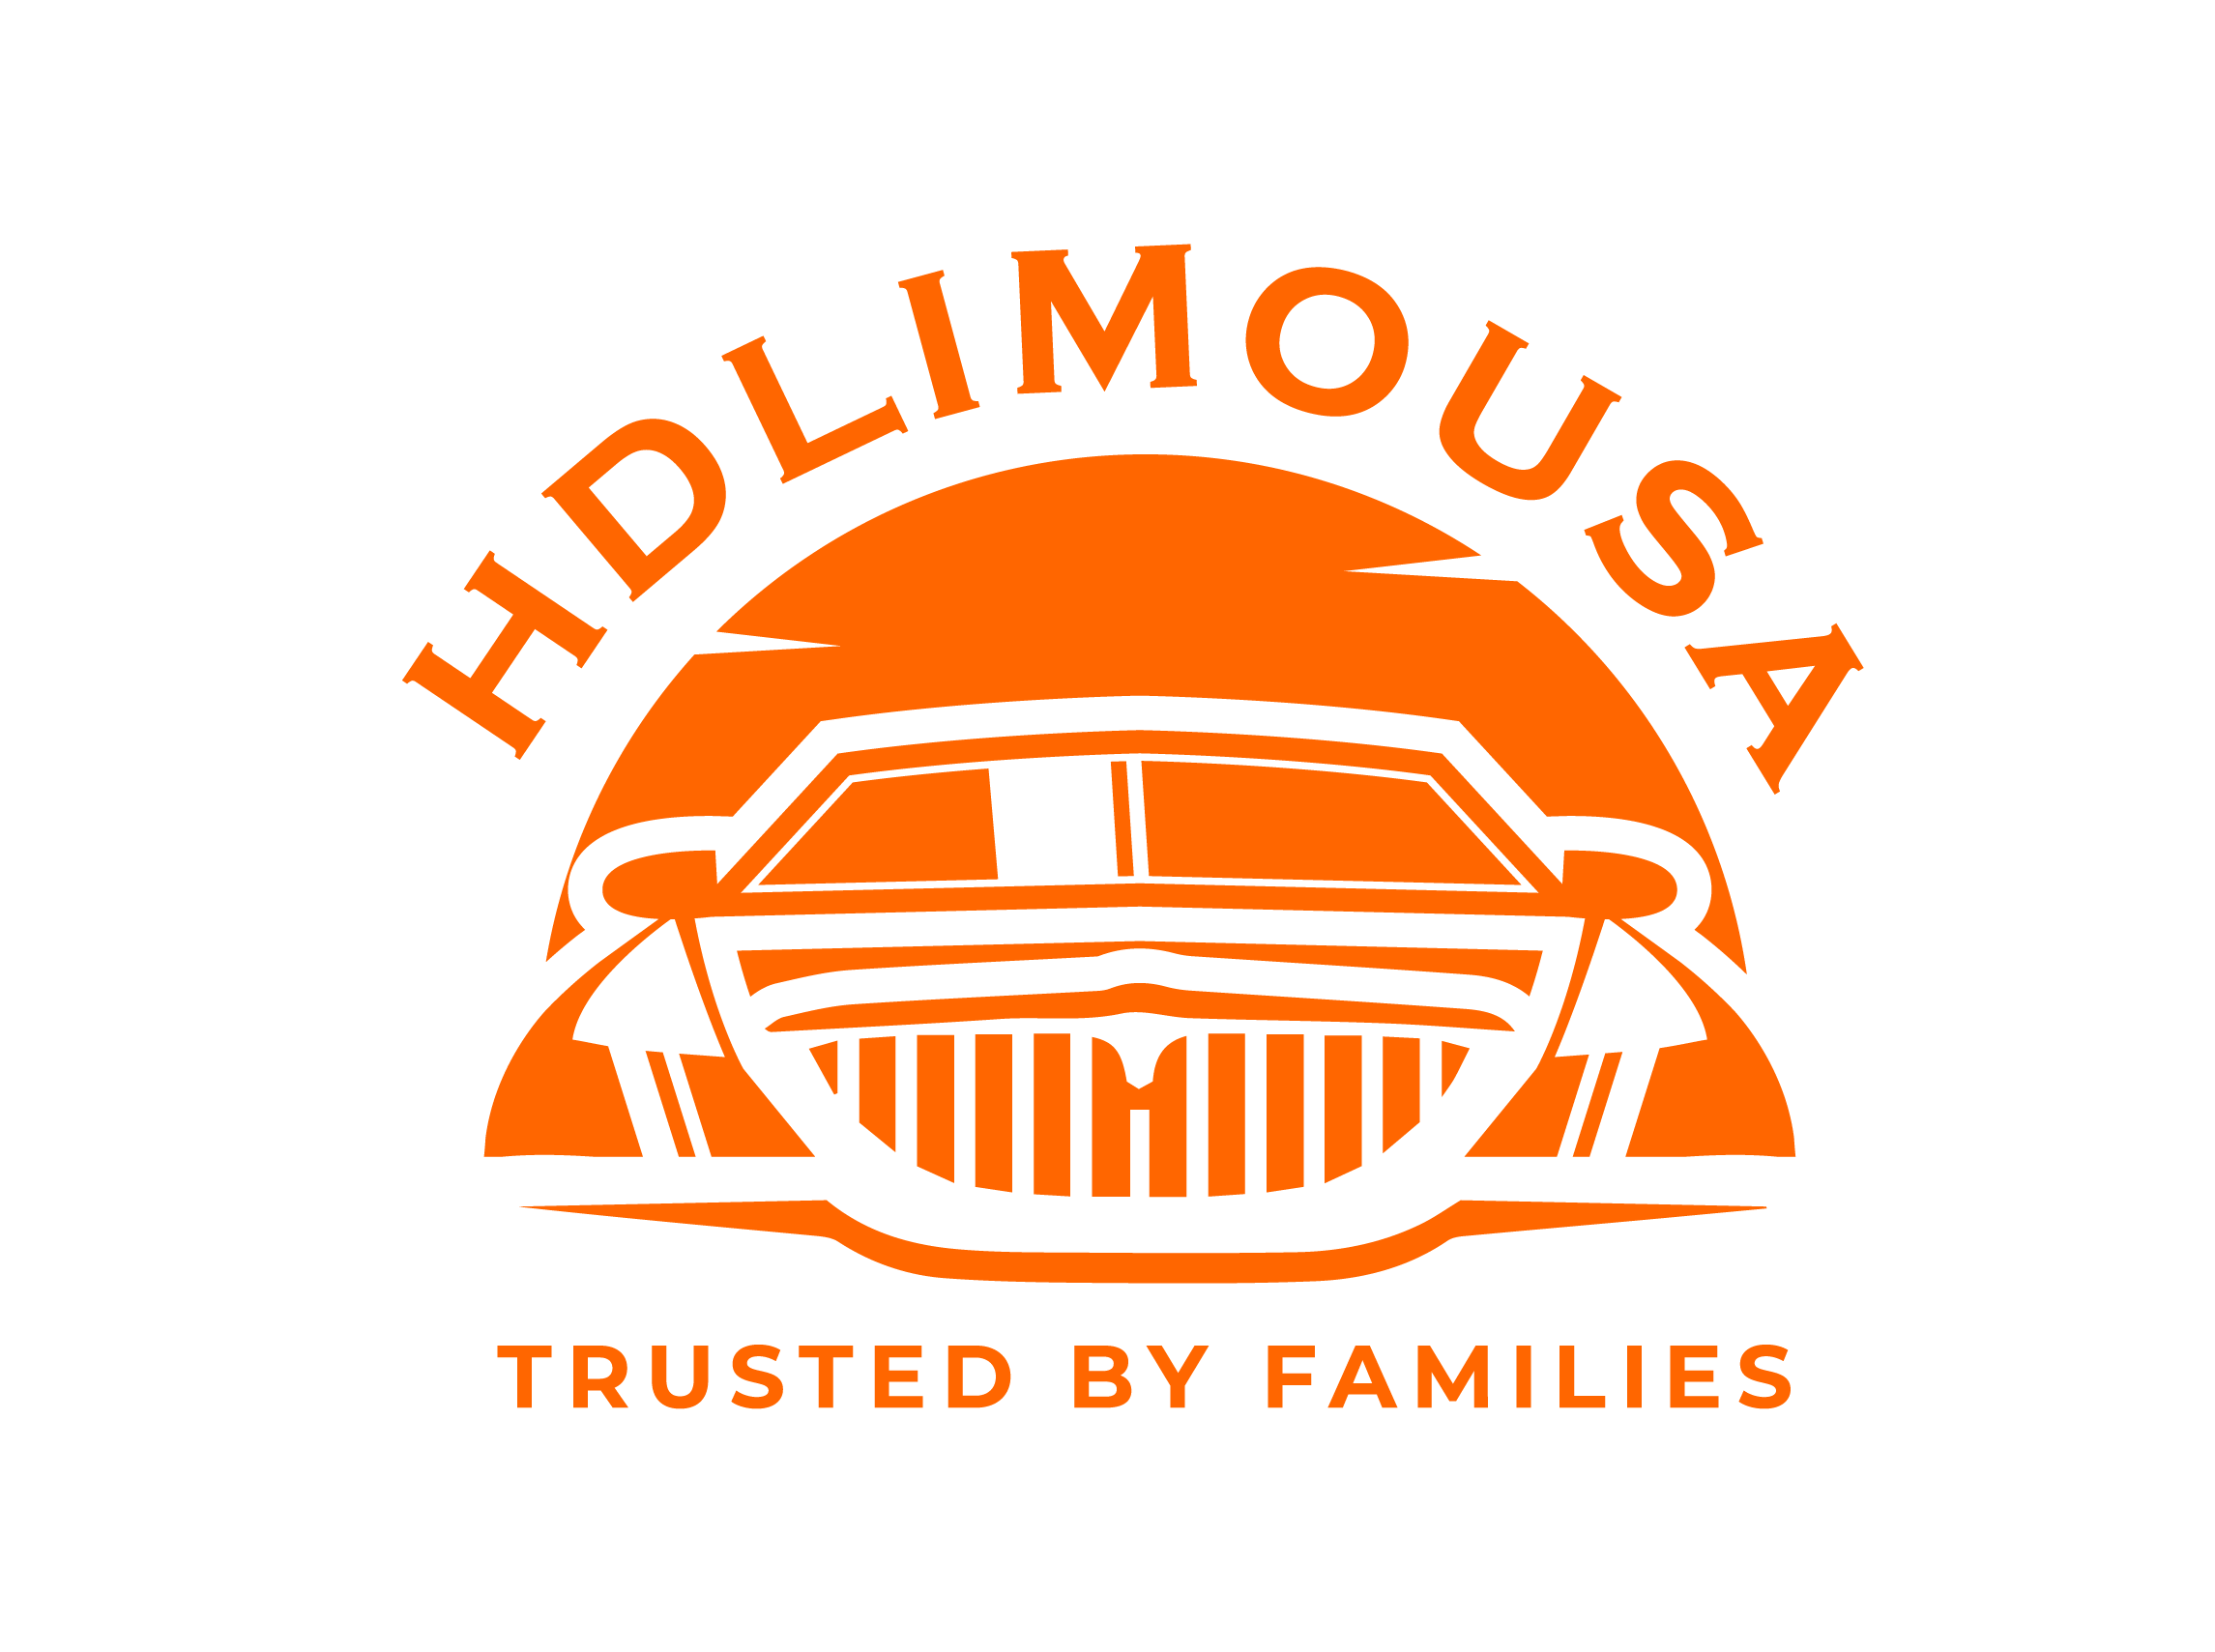 Hdlimousa